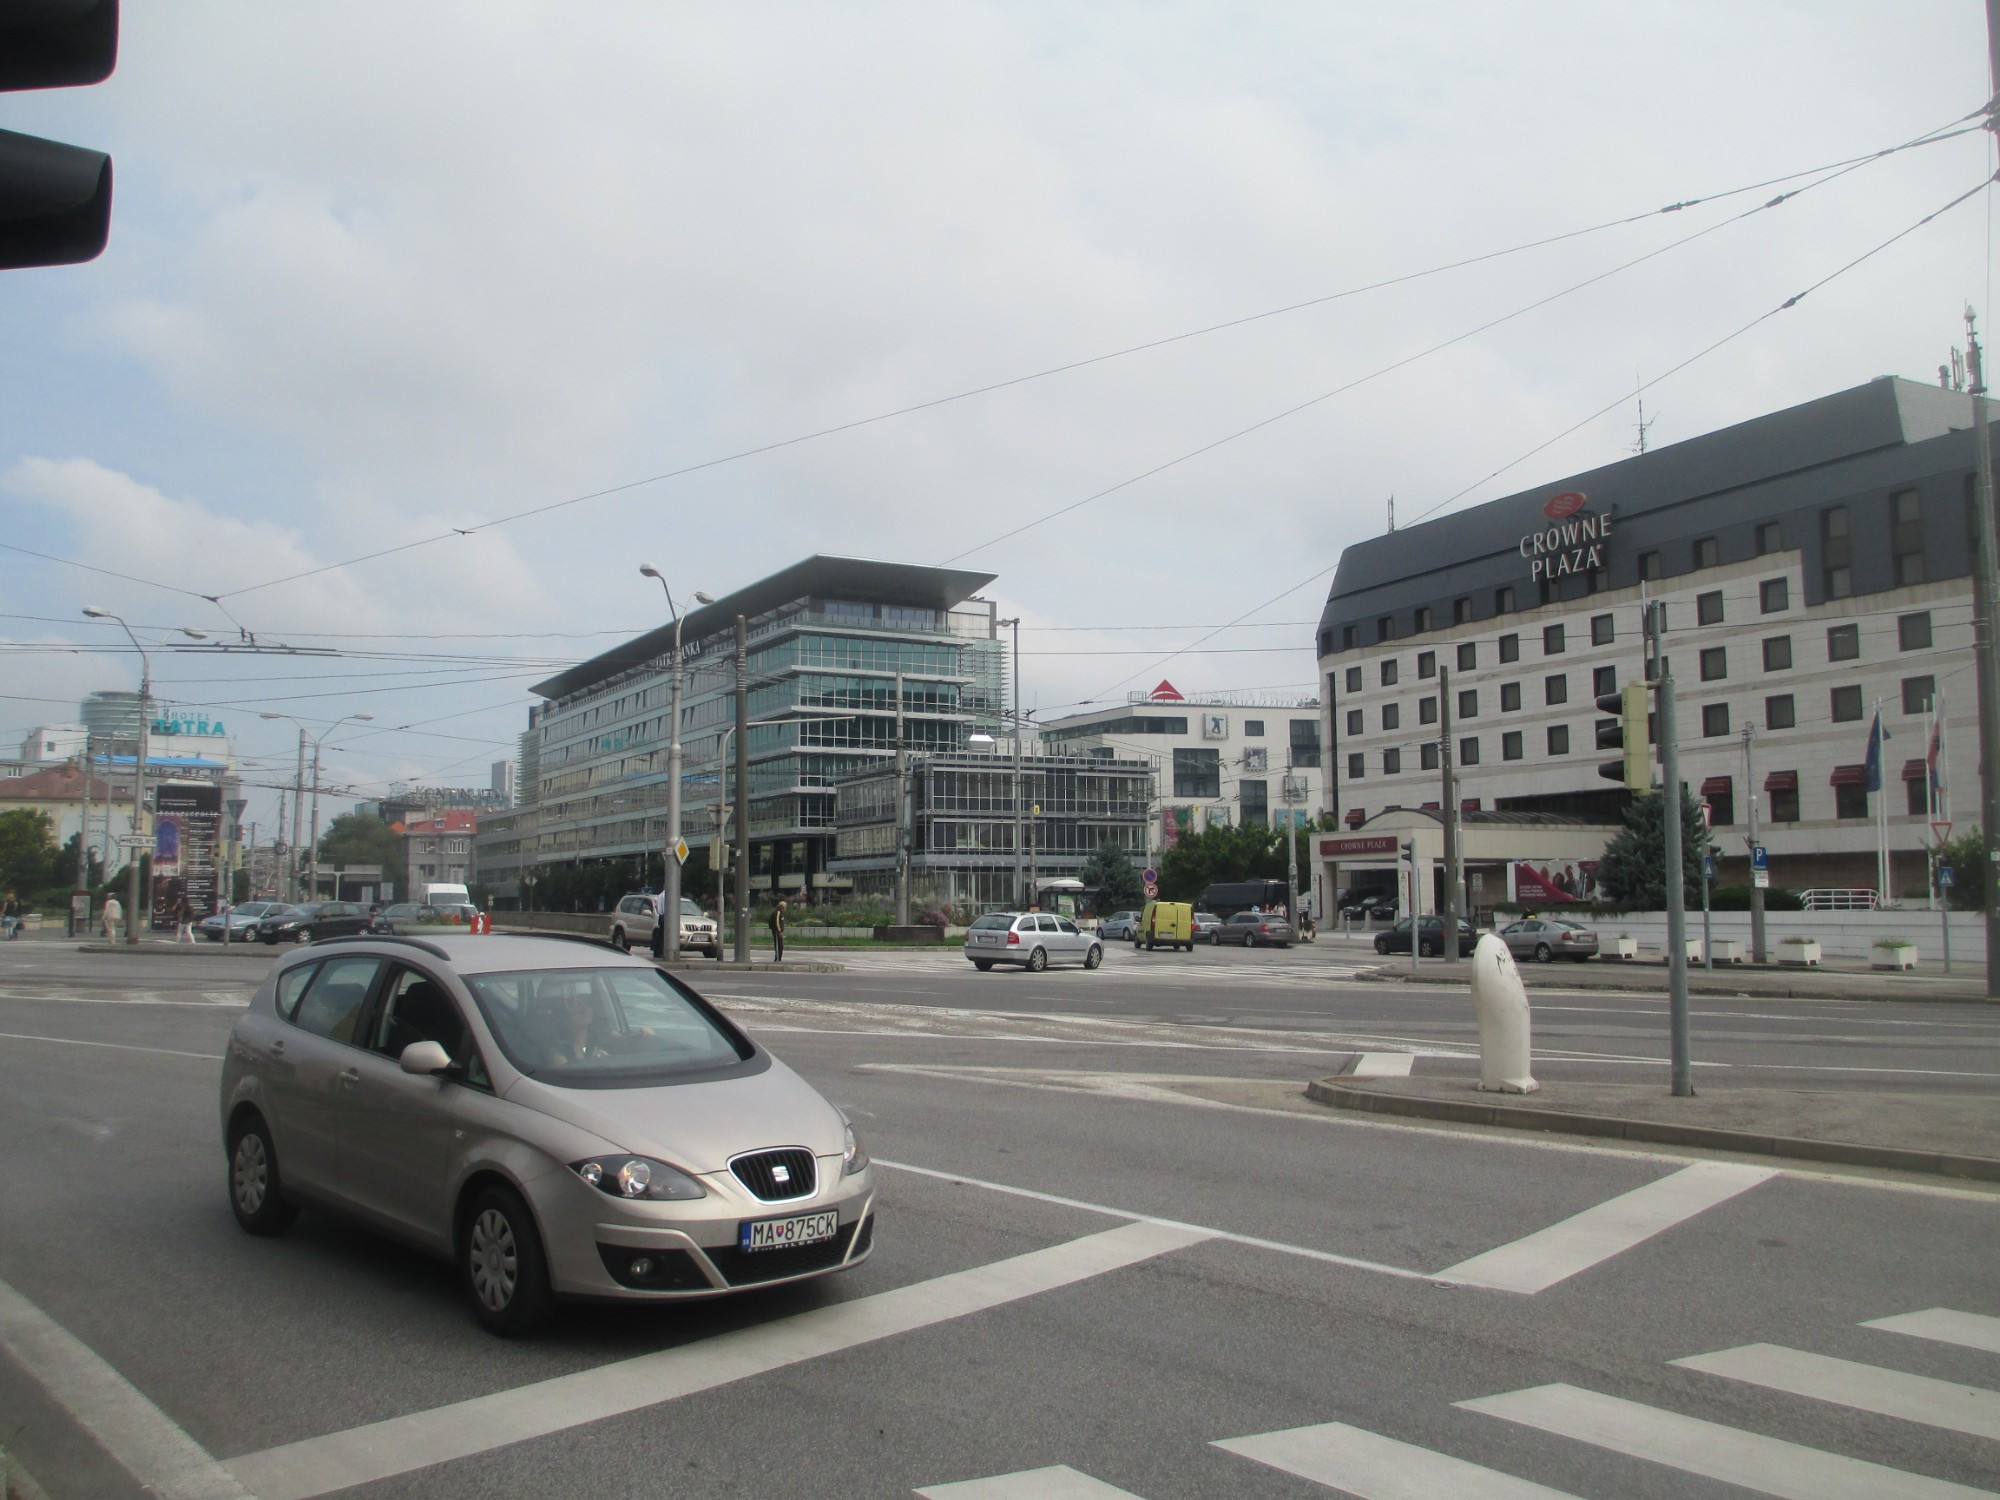 Братислава. Около площади Ходжи. (16.09.2014)